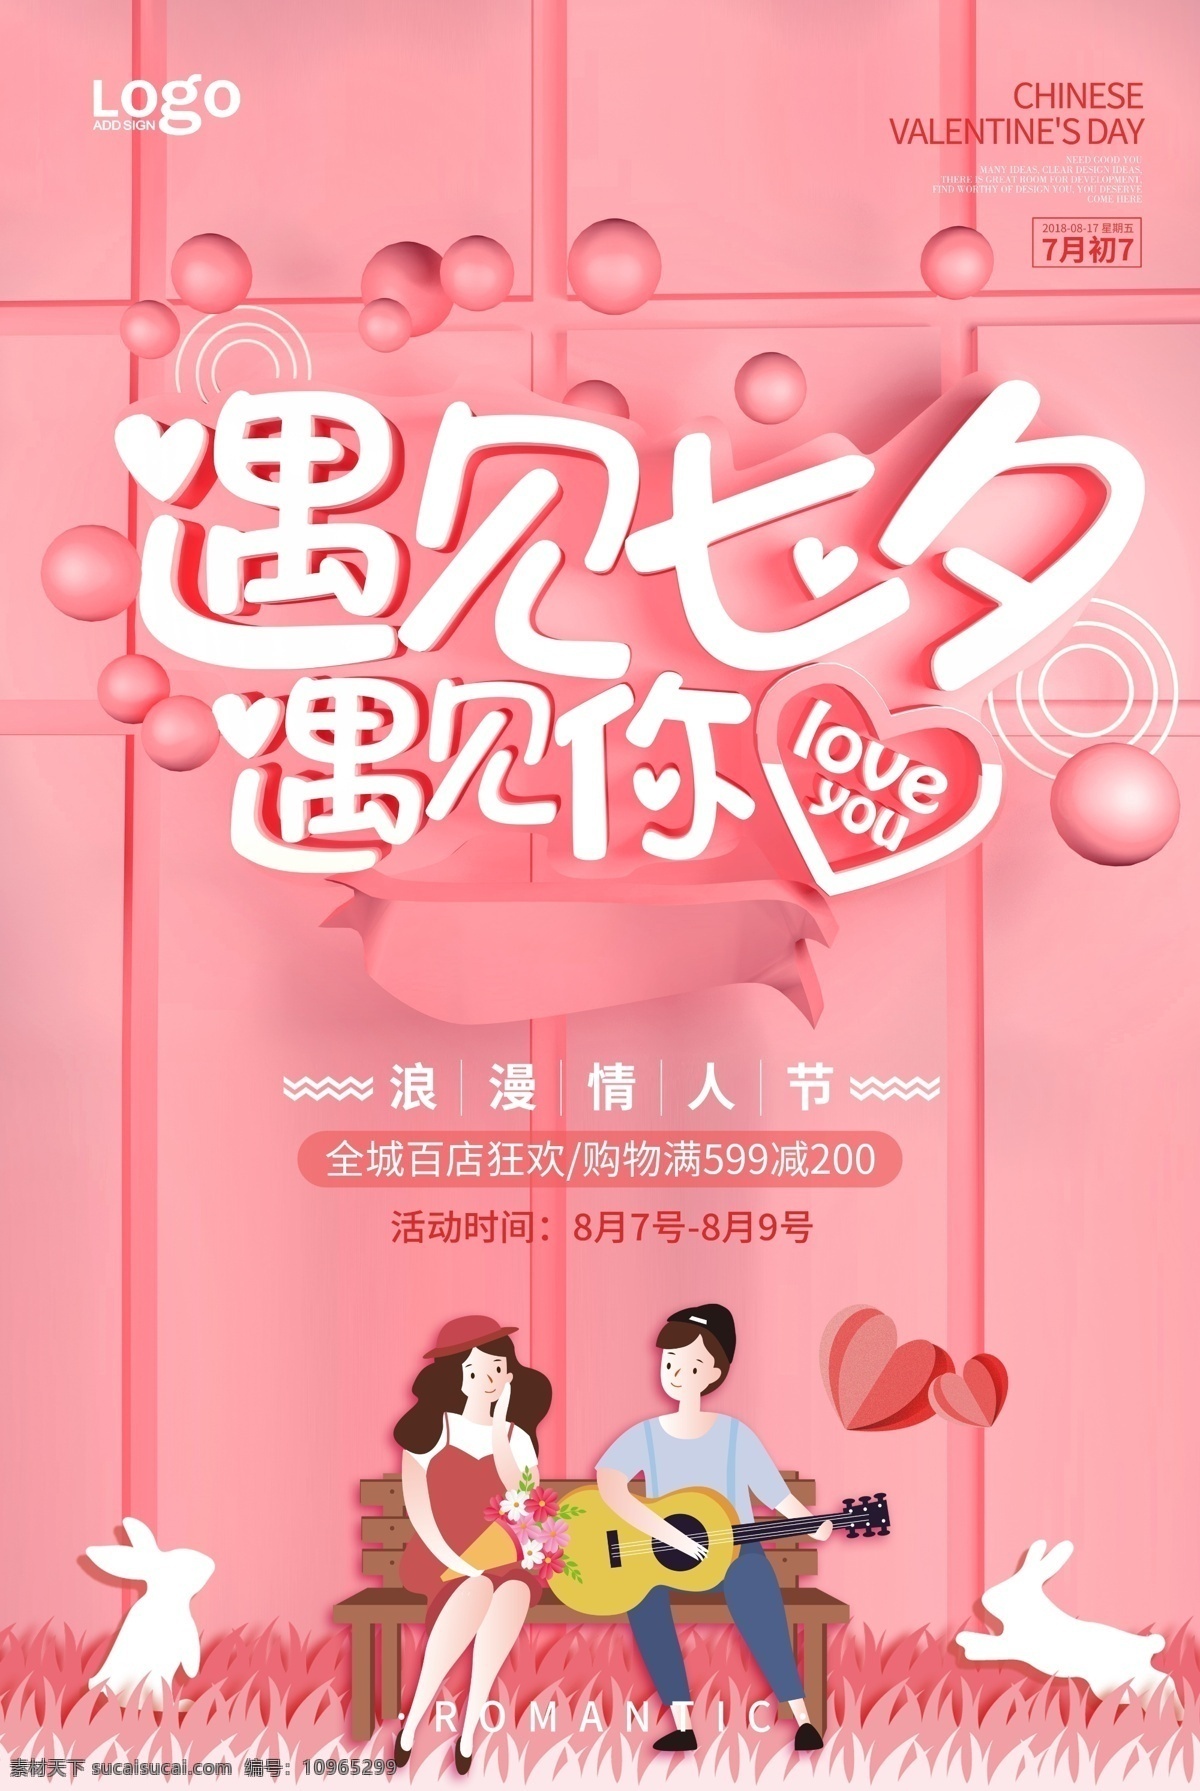 遇见 七夕 遇见你 情人节 浪漫 情侣 幸福 爱情 七夕节 粉红色 商场 广告宣传 分层